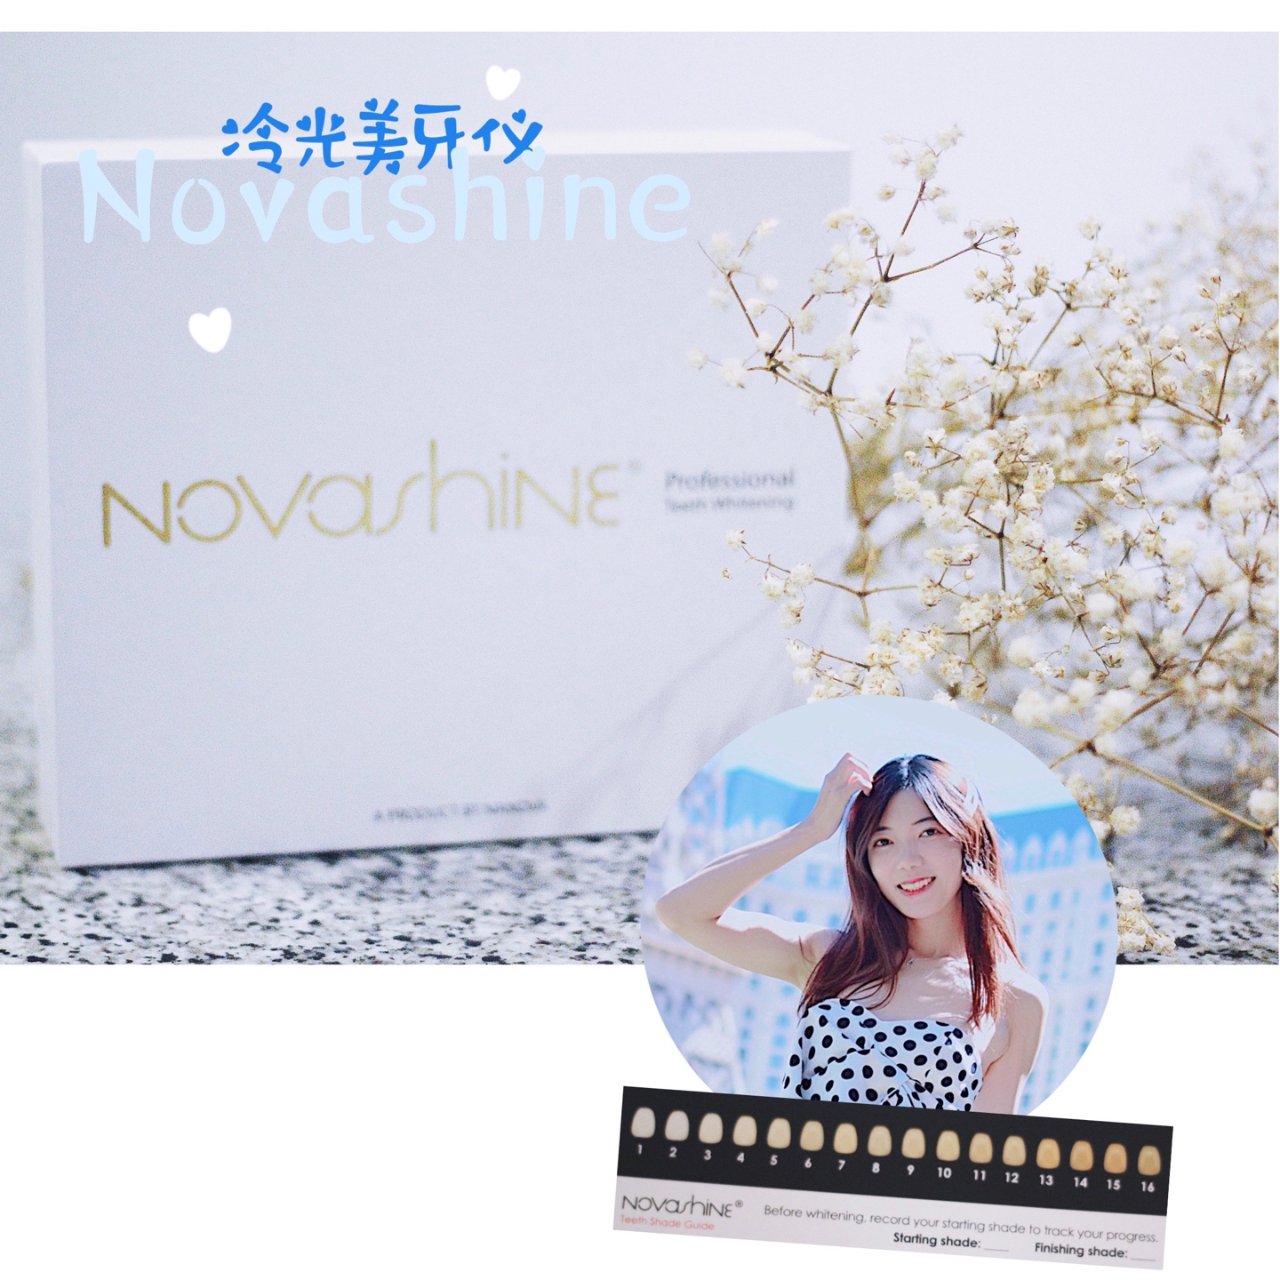 微众测 | Novashine冷光美牙仪...